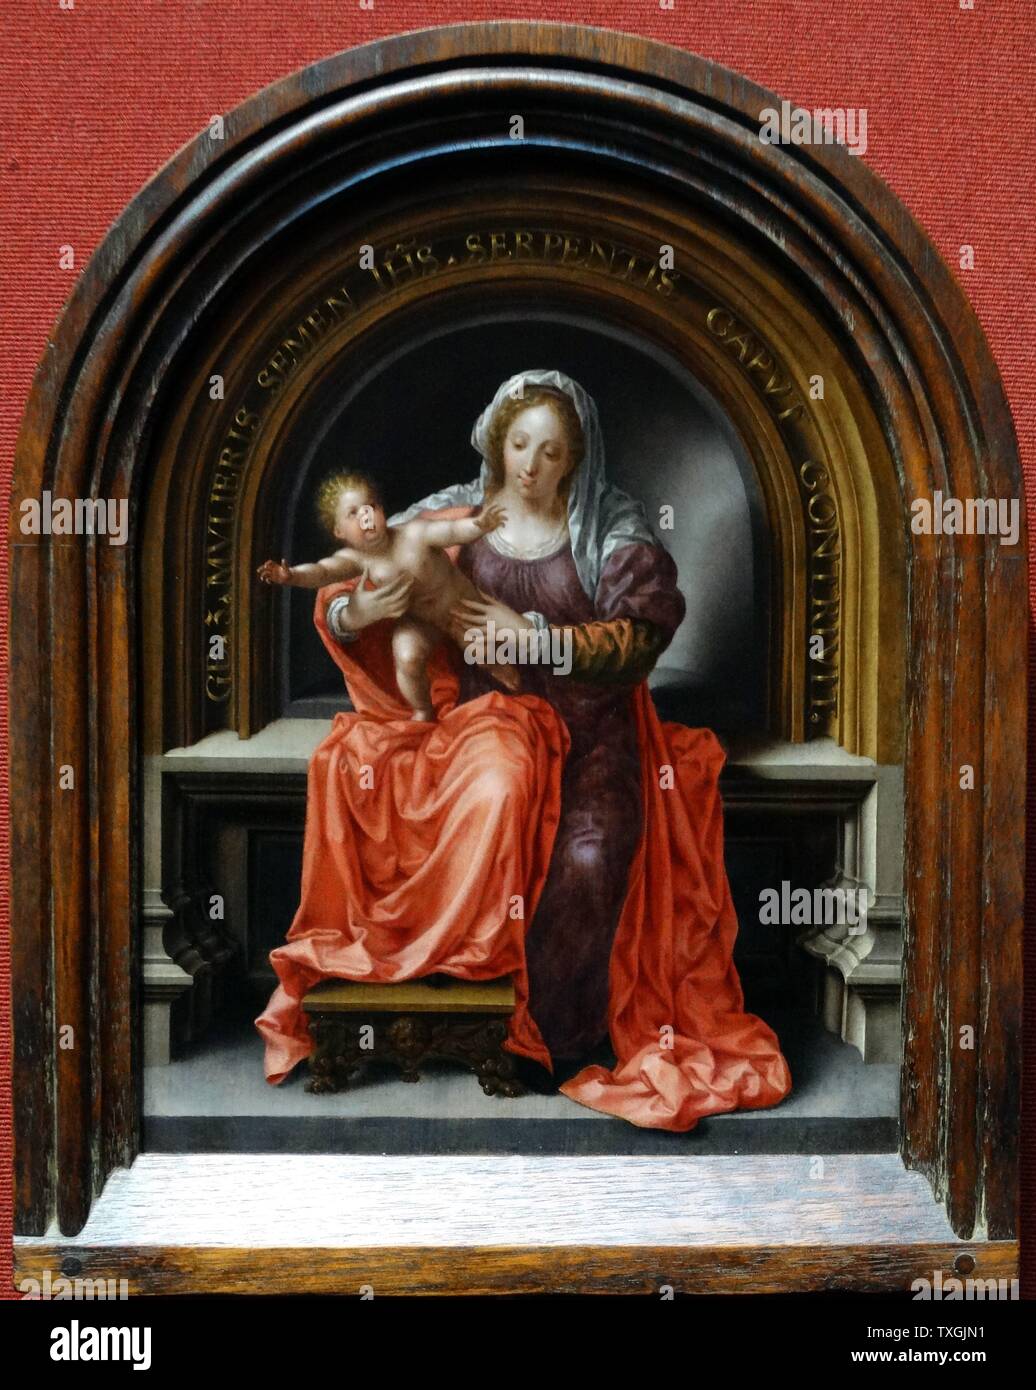 Gemälde mit dem Titel "Die Jungfrau und Kind" von Jan Gossaert (1478-1532), ein französischer Maler und Mitglied der Gilde des Heiligen Lukas. Datiert aus dem 16. Jahrhundert Stockfoto